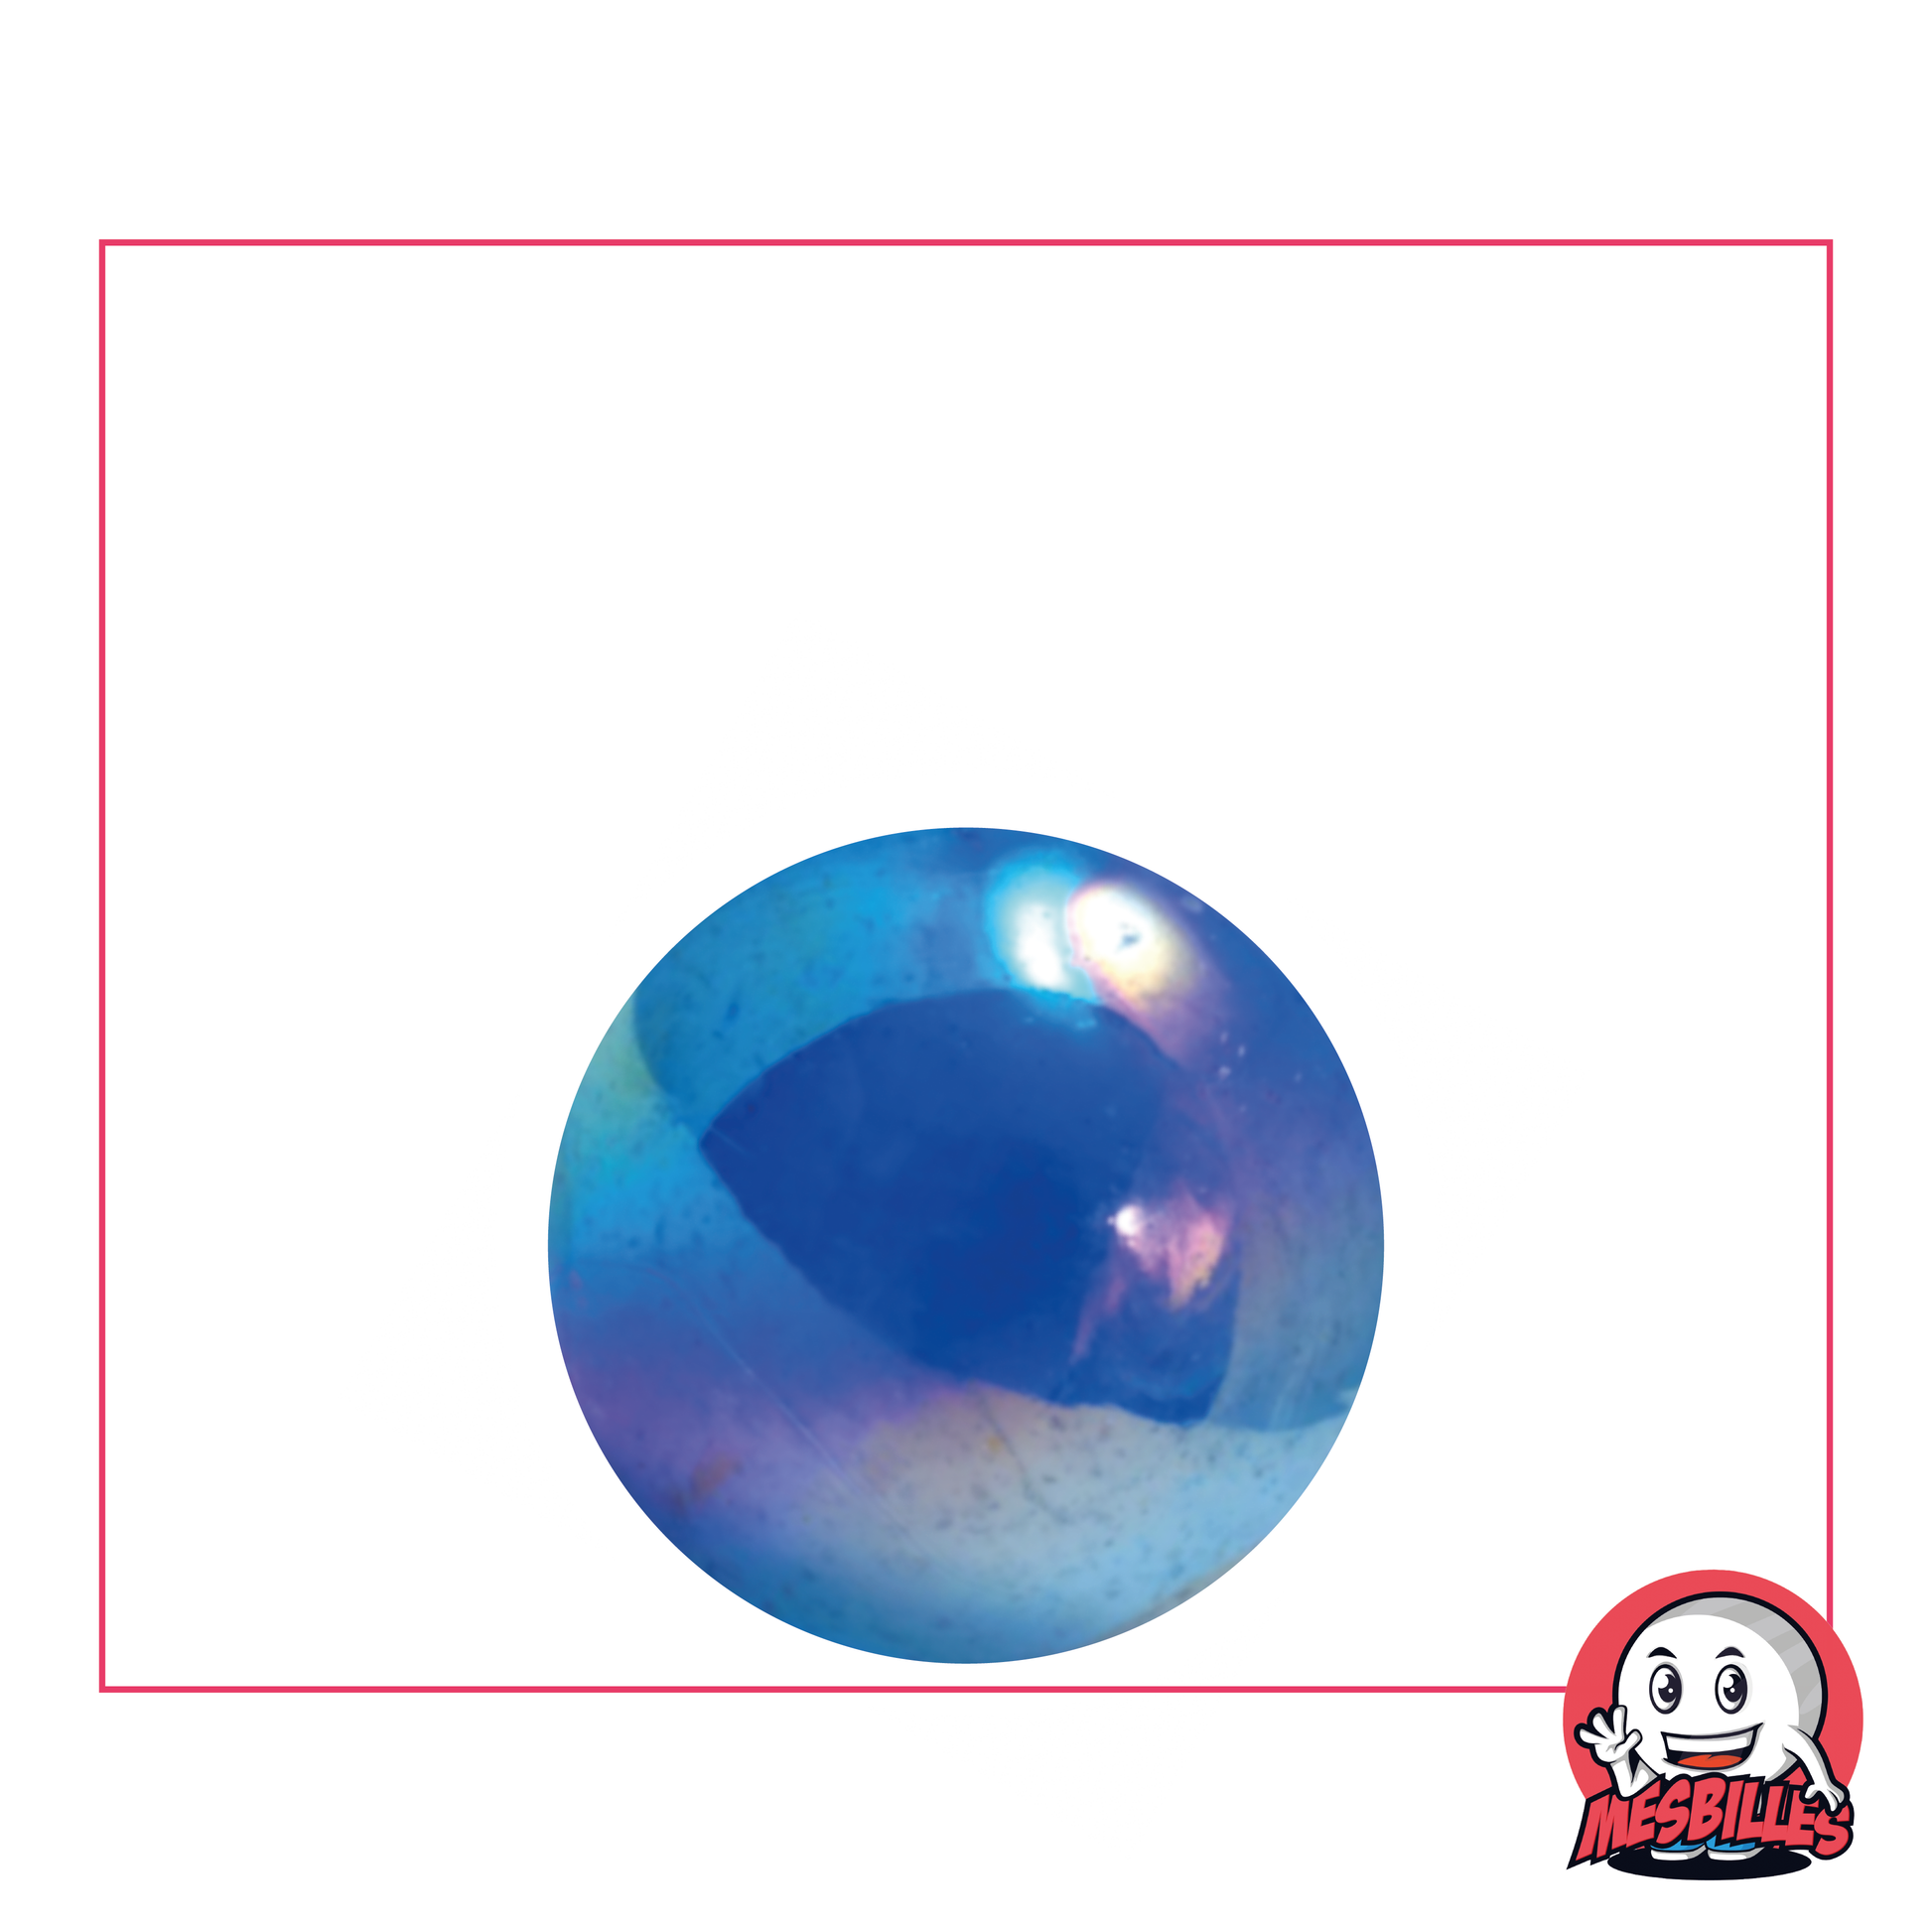 Bille en verre 22mm - Bille ronde transparente bleutée, irisé en surface, pour une profondeur marine